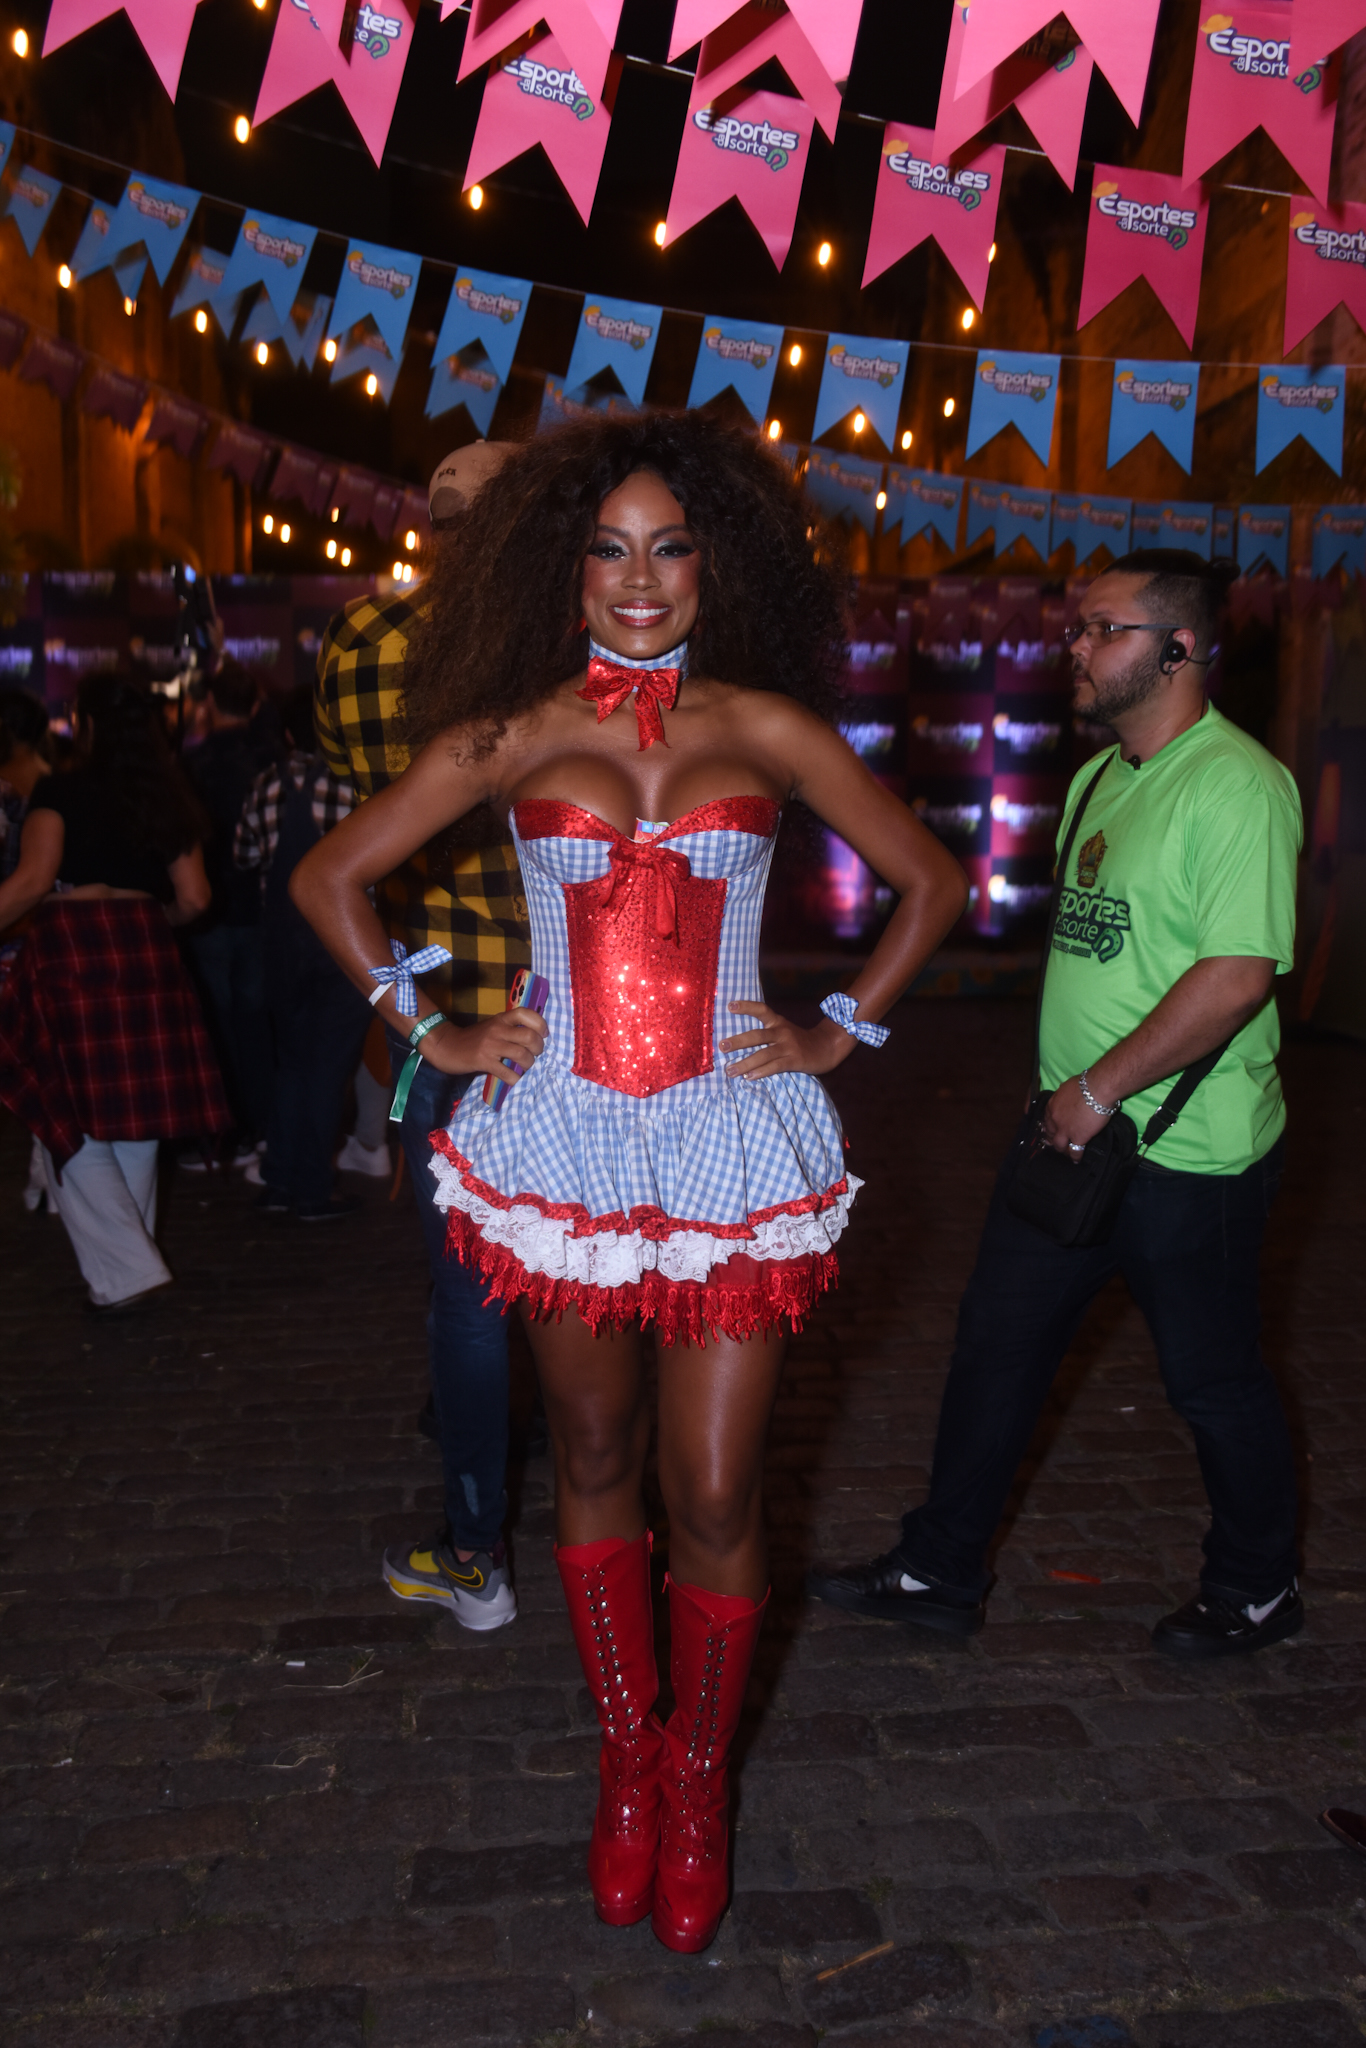 Foto da ex-BBB Lumena Aleluia de vestido xadrez azul com detalhes em vermelho, bota vermelha, cabelos soltos e volumosos, segurando celular com cores do arco-íris, com bandeiras de festa junina ao fundo